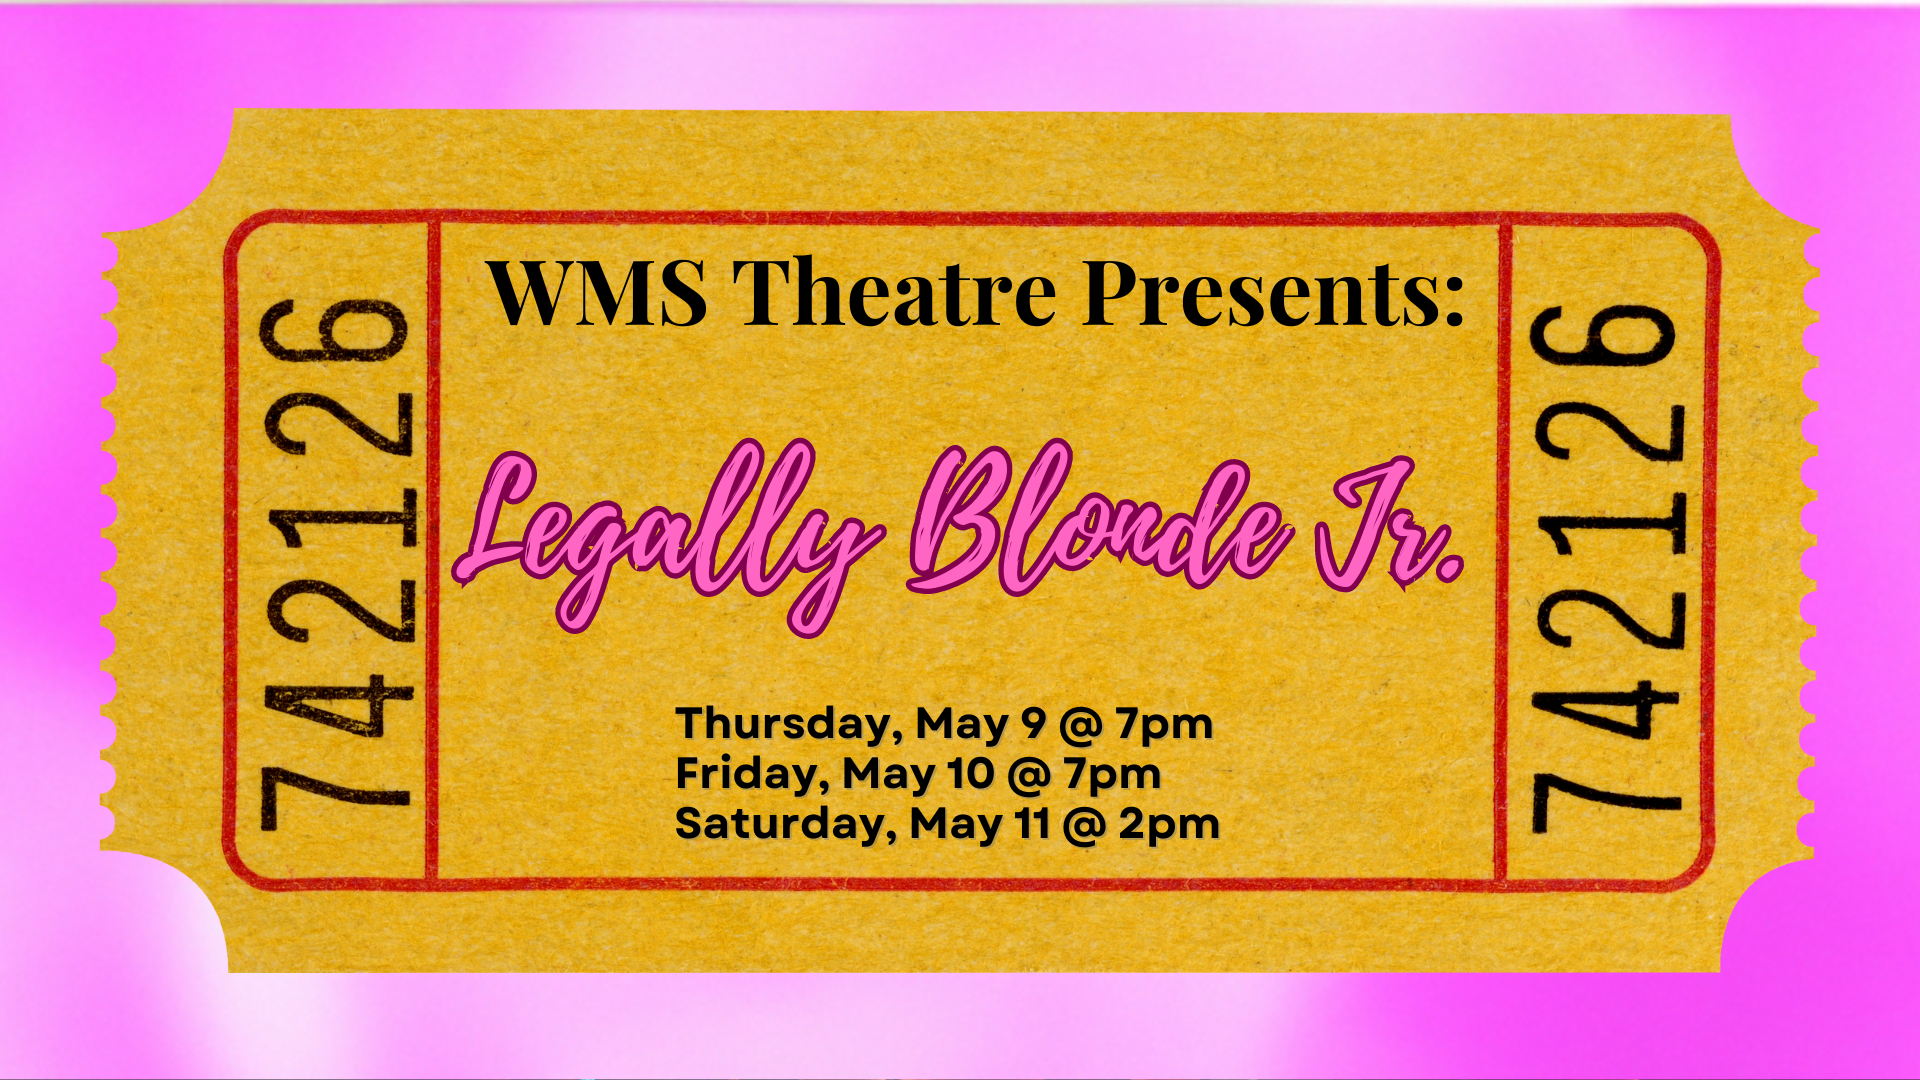 WMS Theatre prsents Legally Blonde Jr